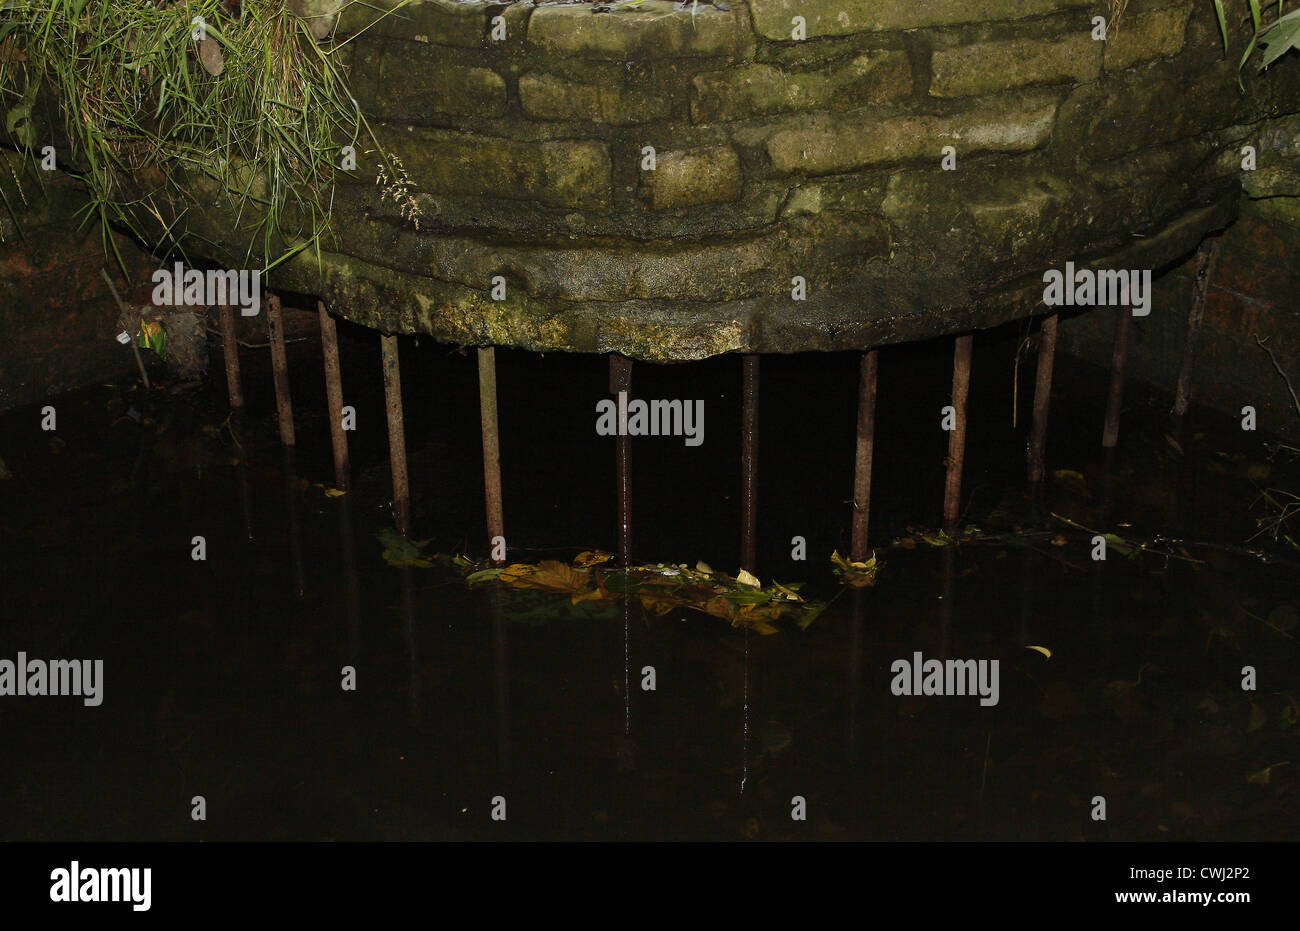 Griglia protettiva su scarico sul fiume idle Kings Park,Retford, Nottinghamshire, England, Regno Unito Foto Stock